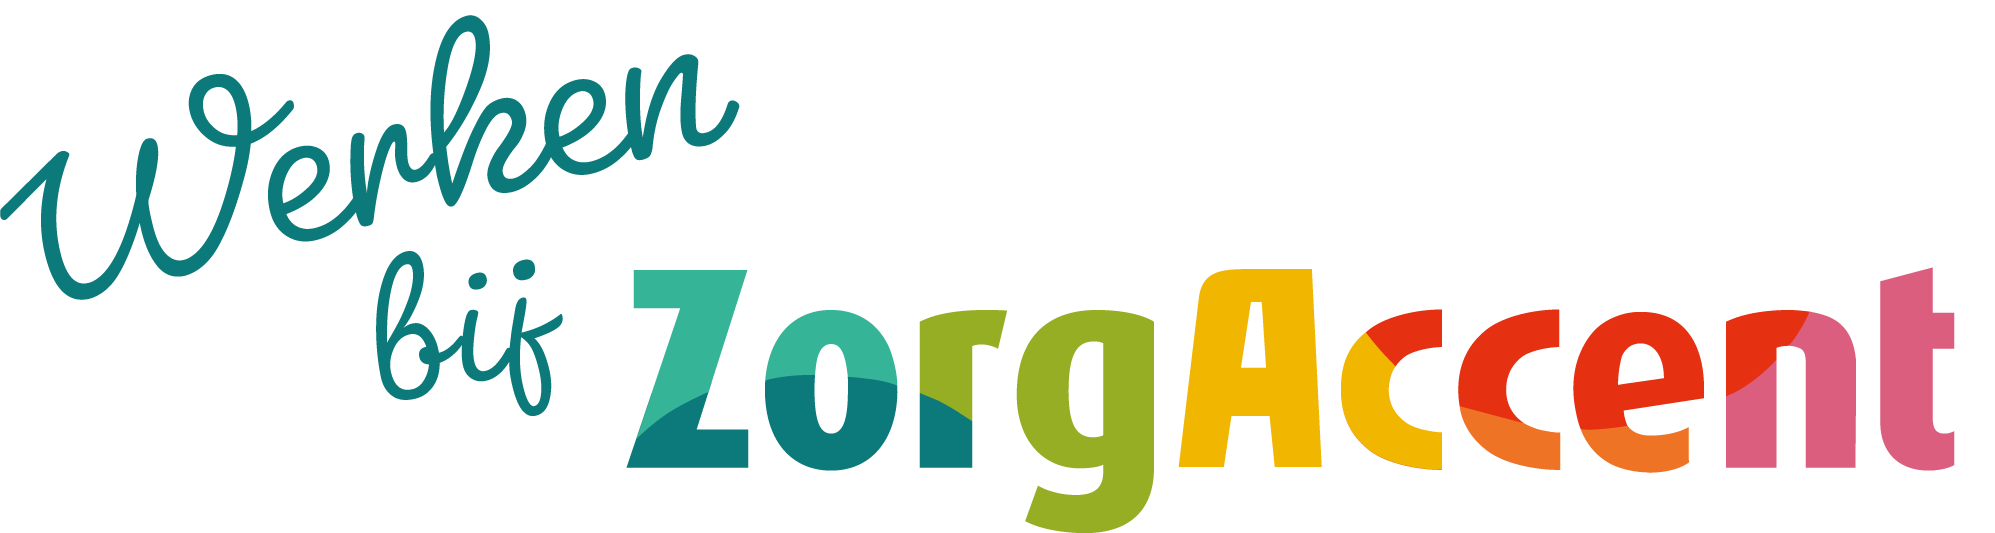 Logo werken bij ZorgAccent